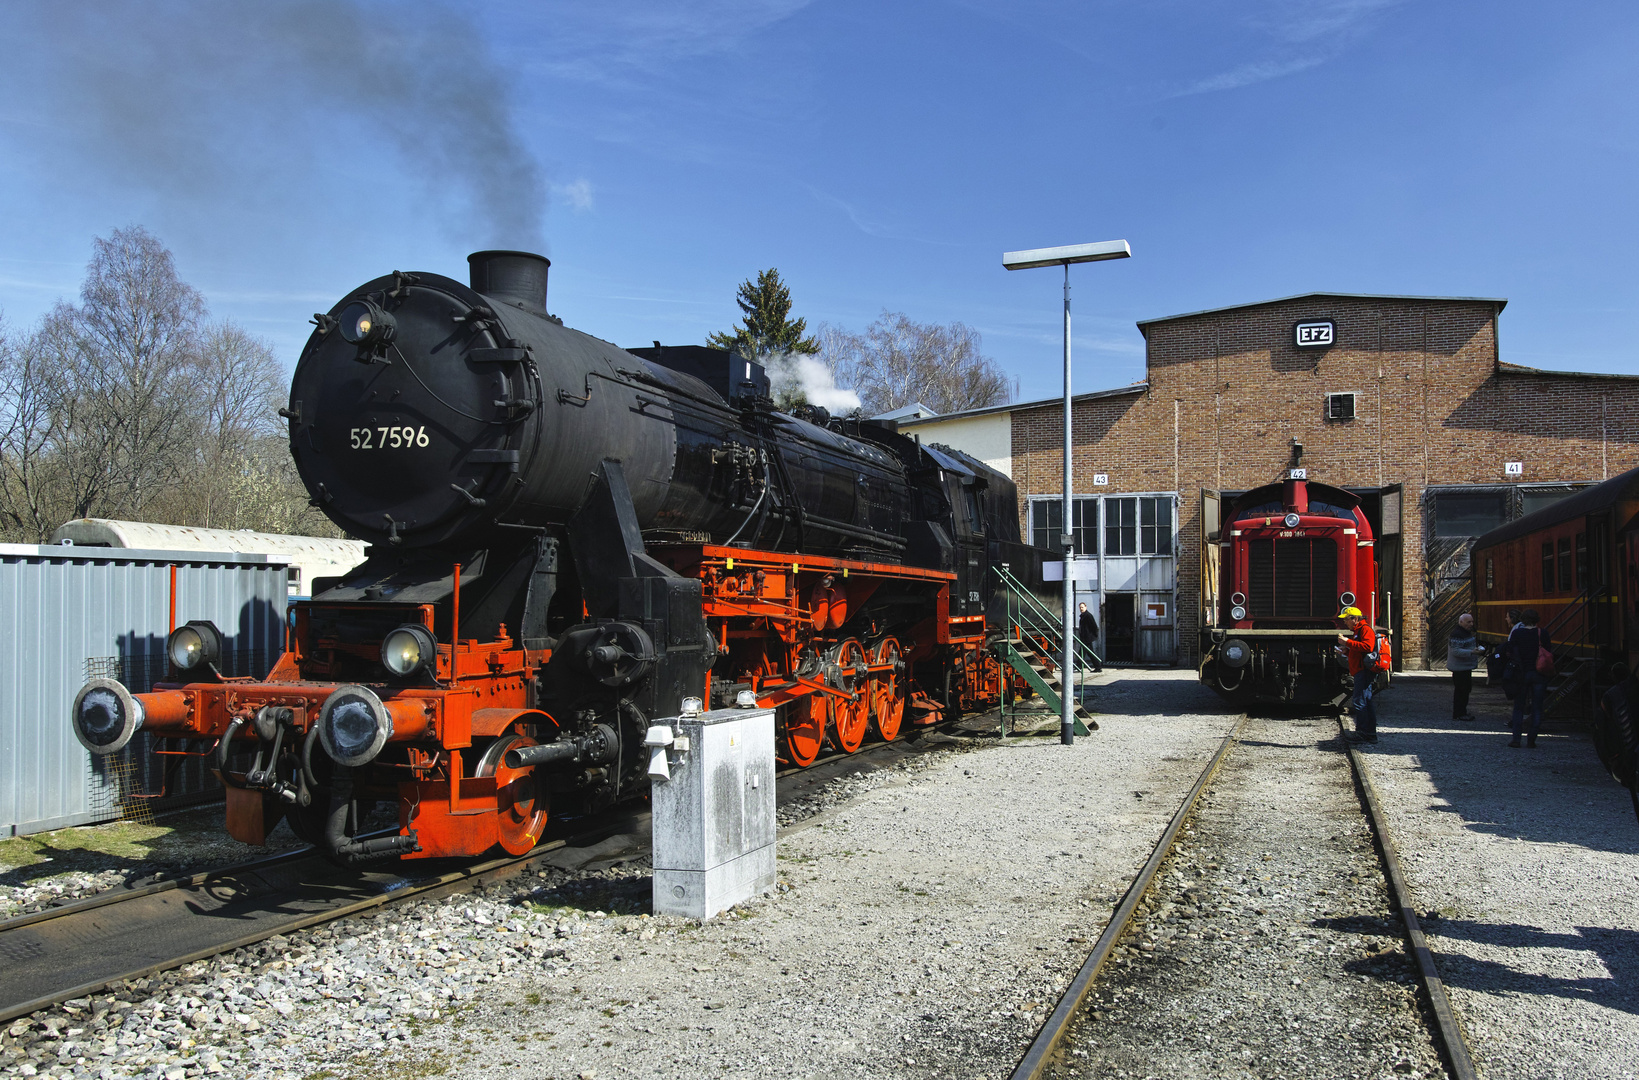 Dampflokomotive 52 7596 der EFZ